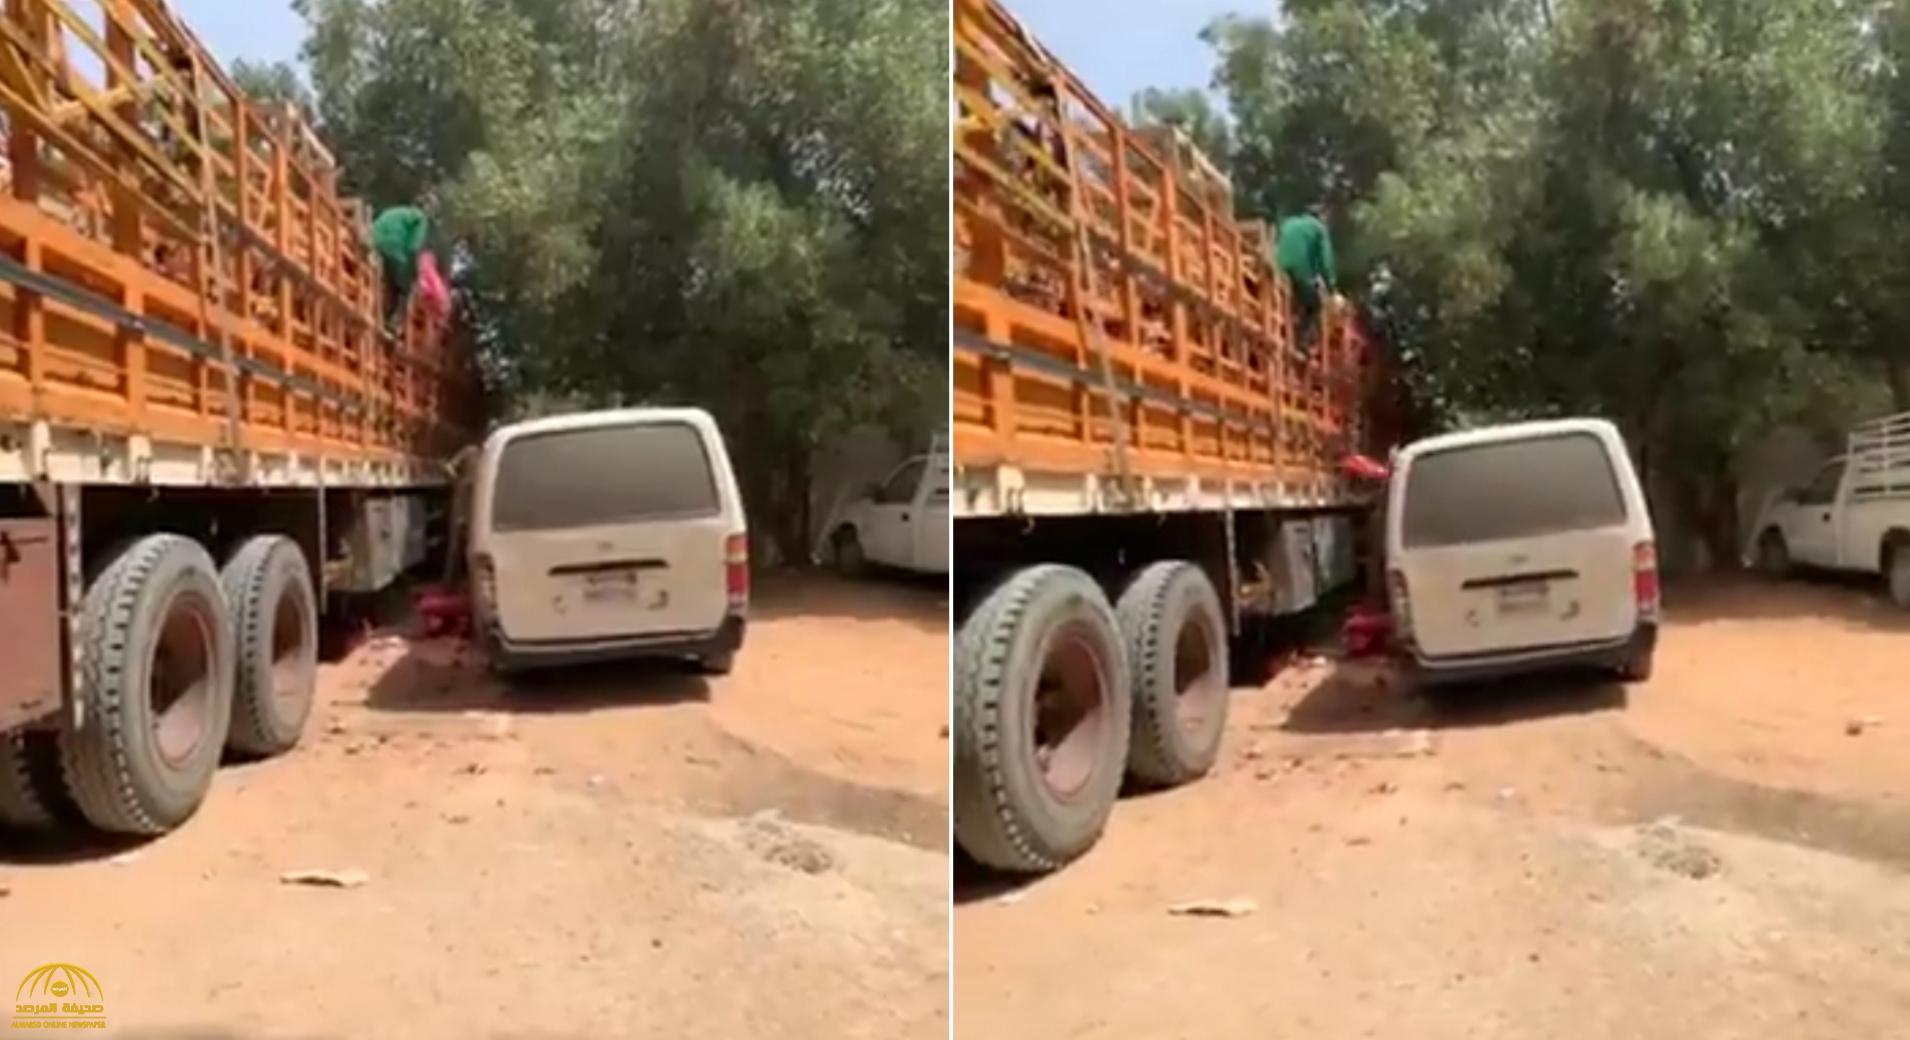 "التجارة" تكشف مصير صاحب الشاحنة الذي ظهر في فيديو يجمع كميات كبيرة من البصل بالرياض!